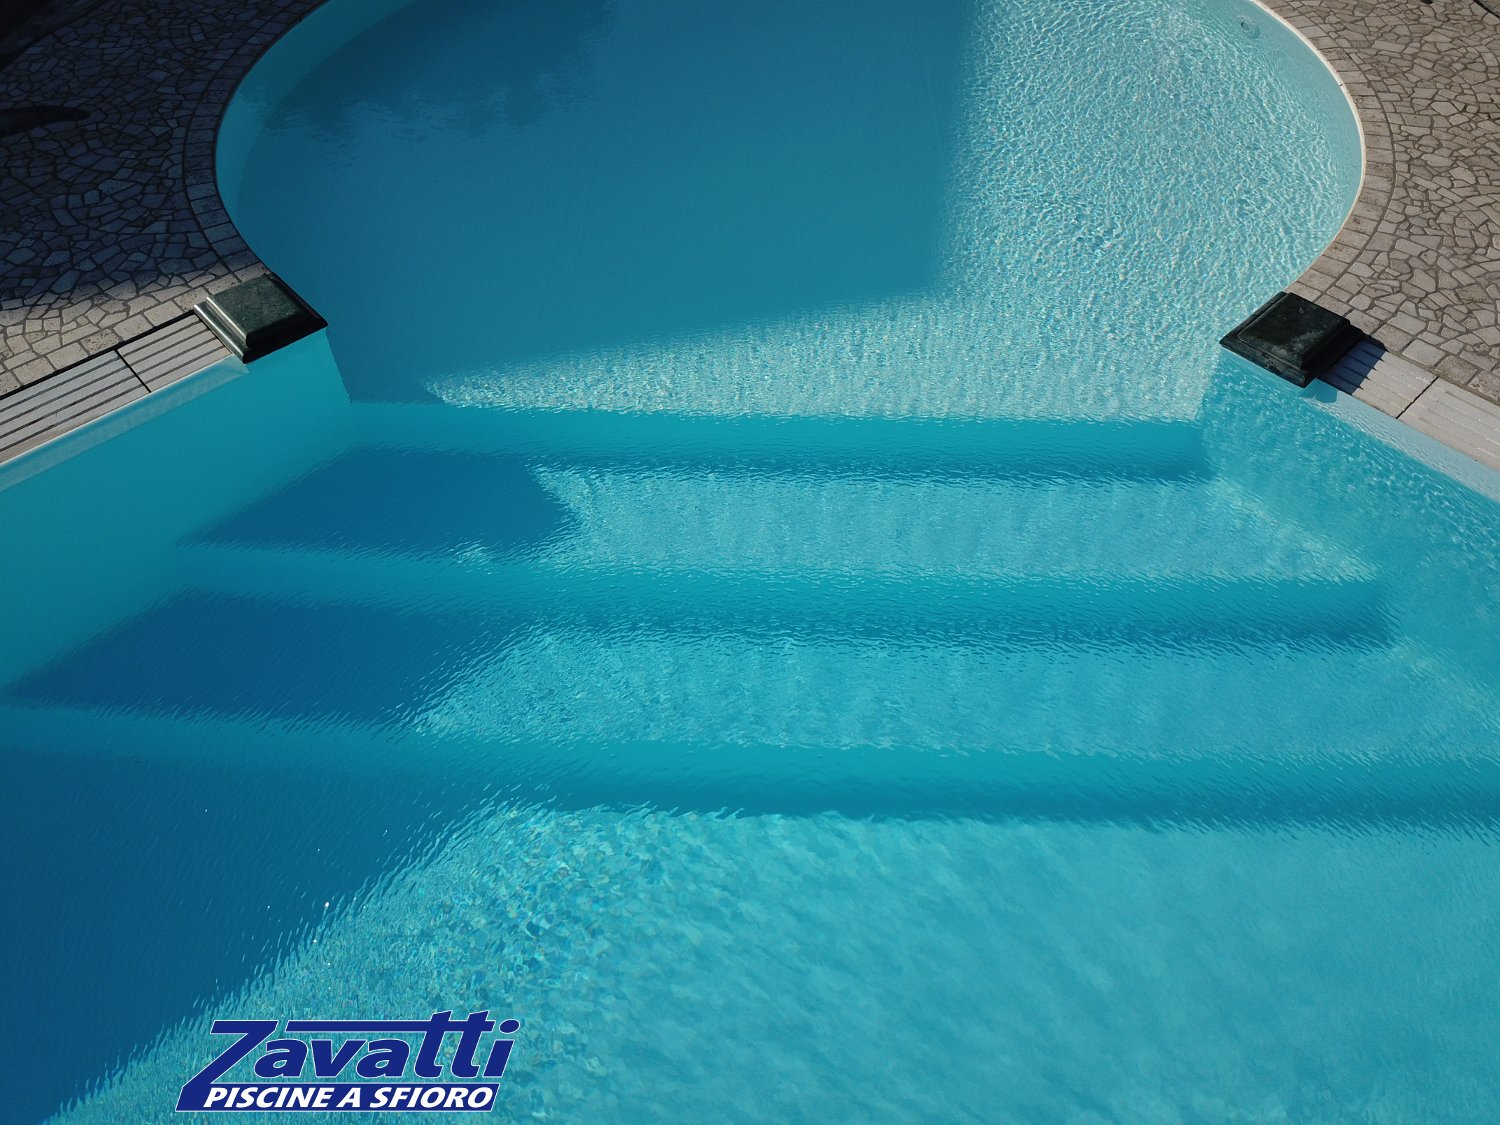 Dettaglio scalini piscina a sfioro con zona relax circolare